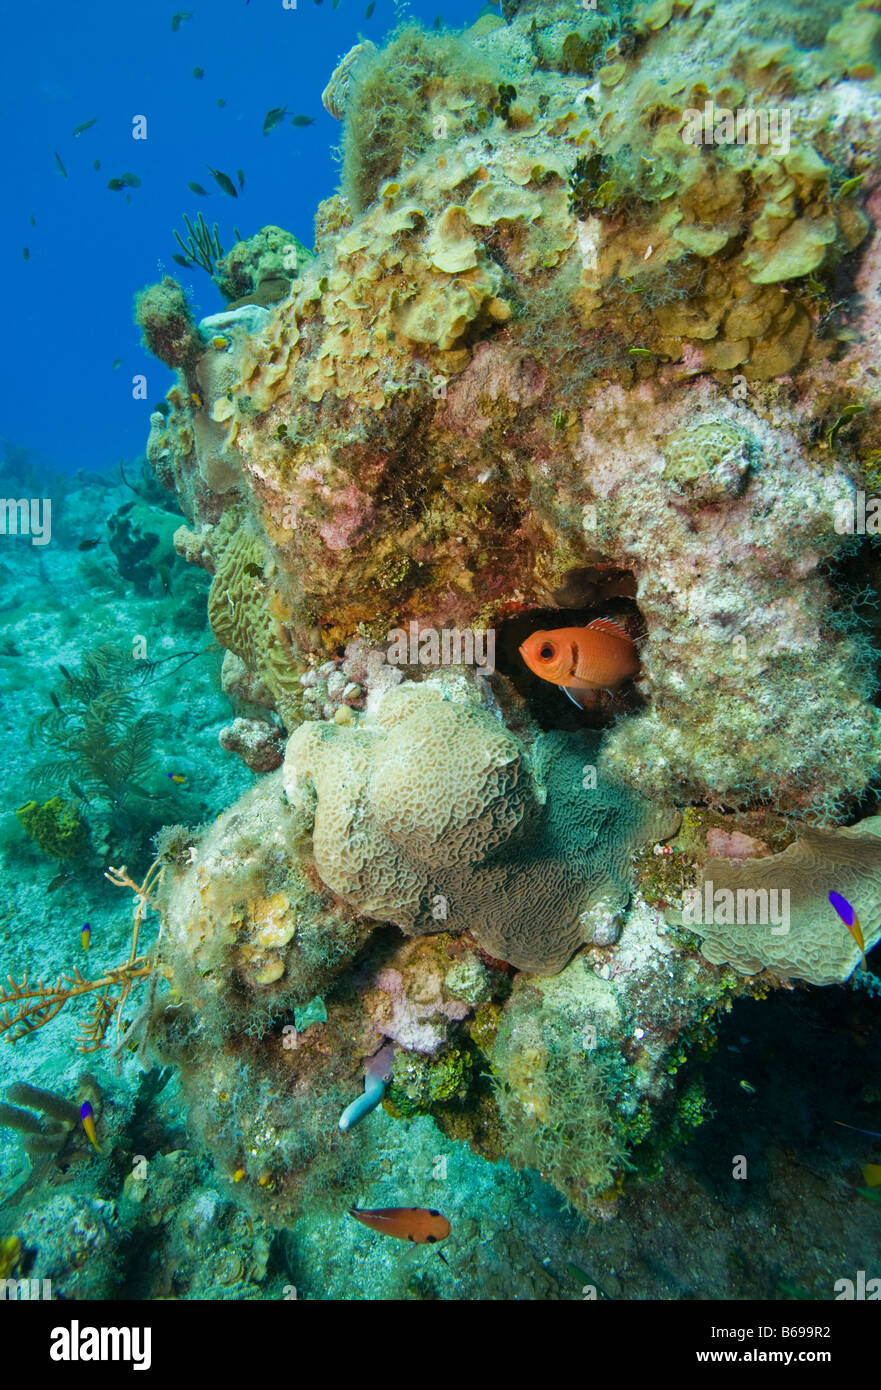 Isole Cayman Grand Cayman Island vista subacquea di pesci tropicali nuoto passato barriere coralline nel Mar dei Caraibi Foto Stock